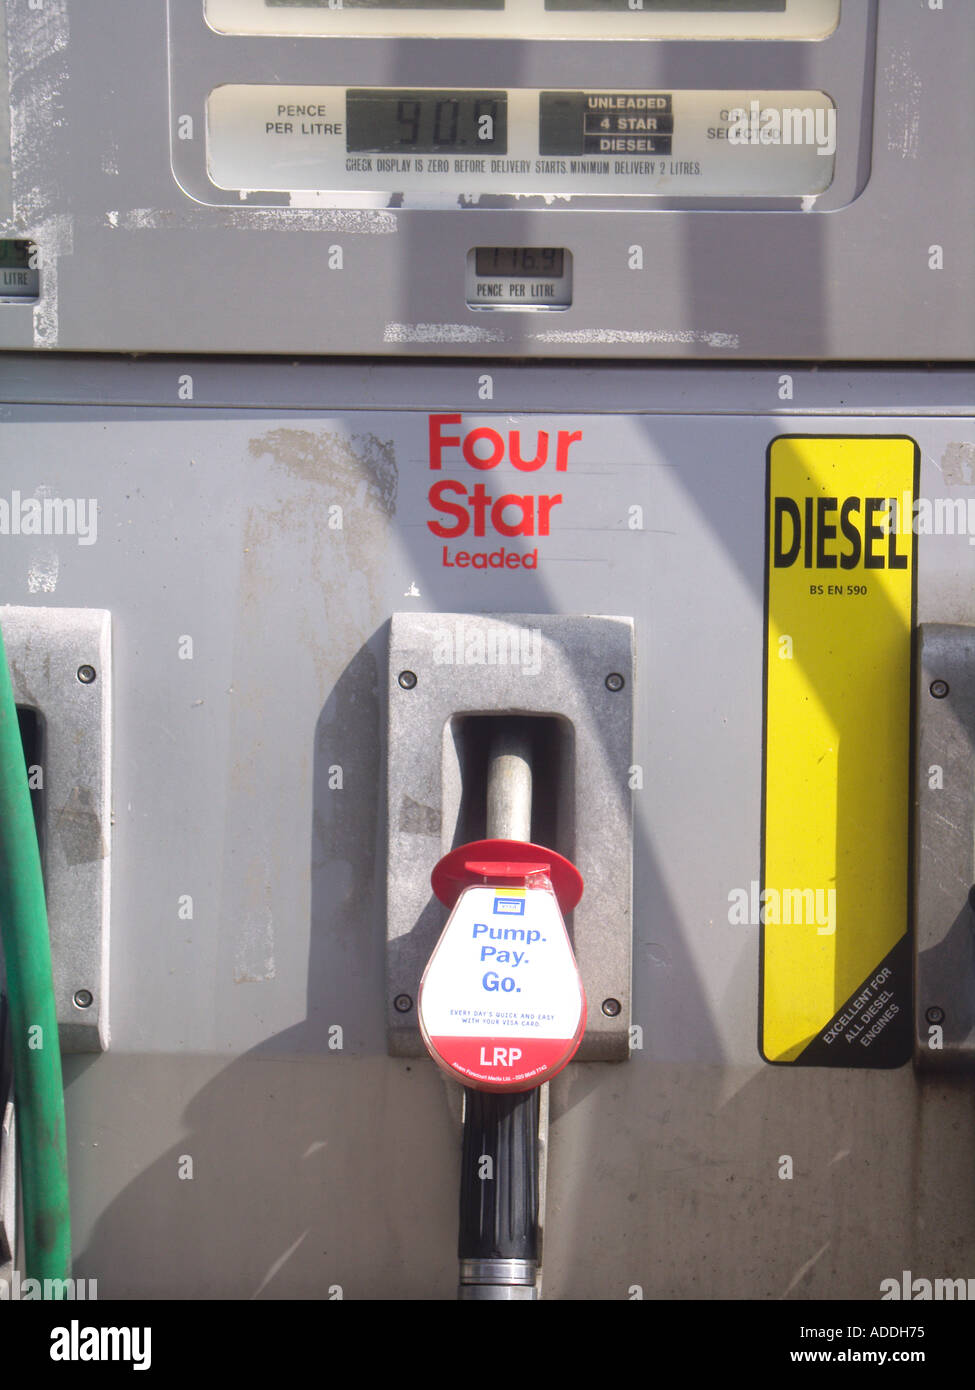 Le pompe di benzina in un garage - Diesel e quattro stelle di benzina con piombo Foto Stock